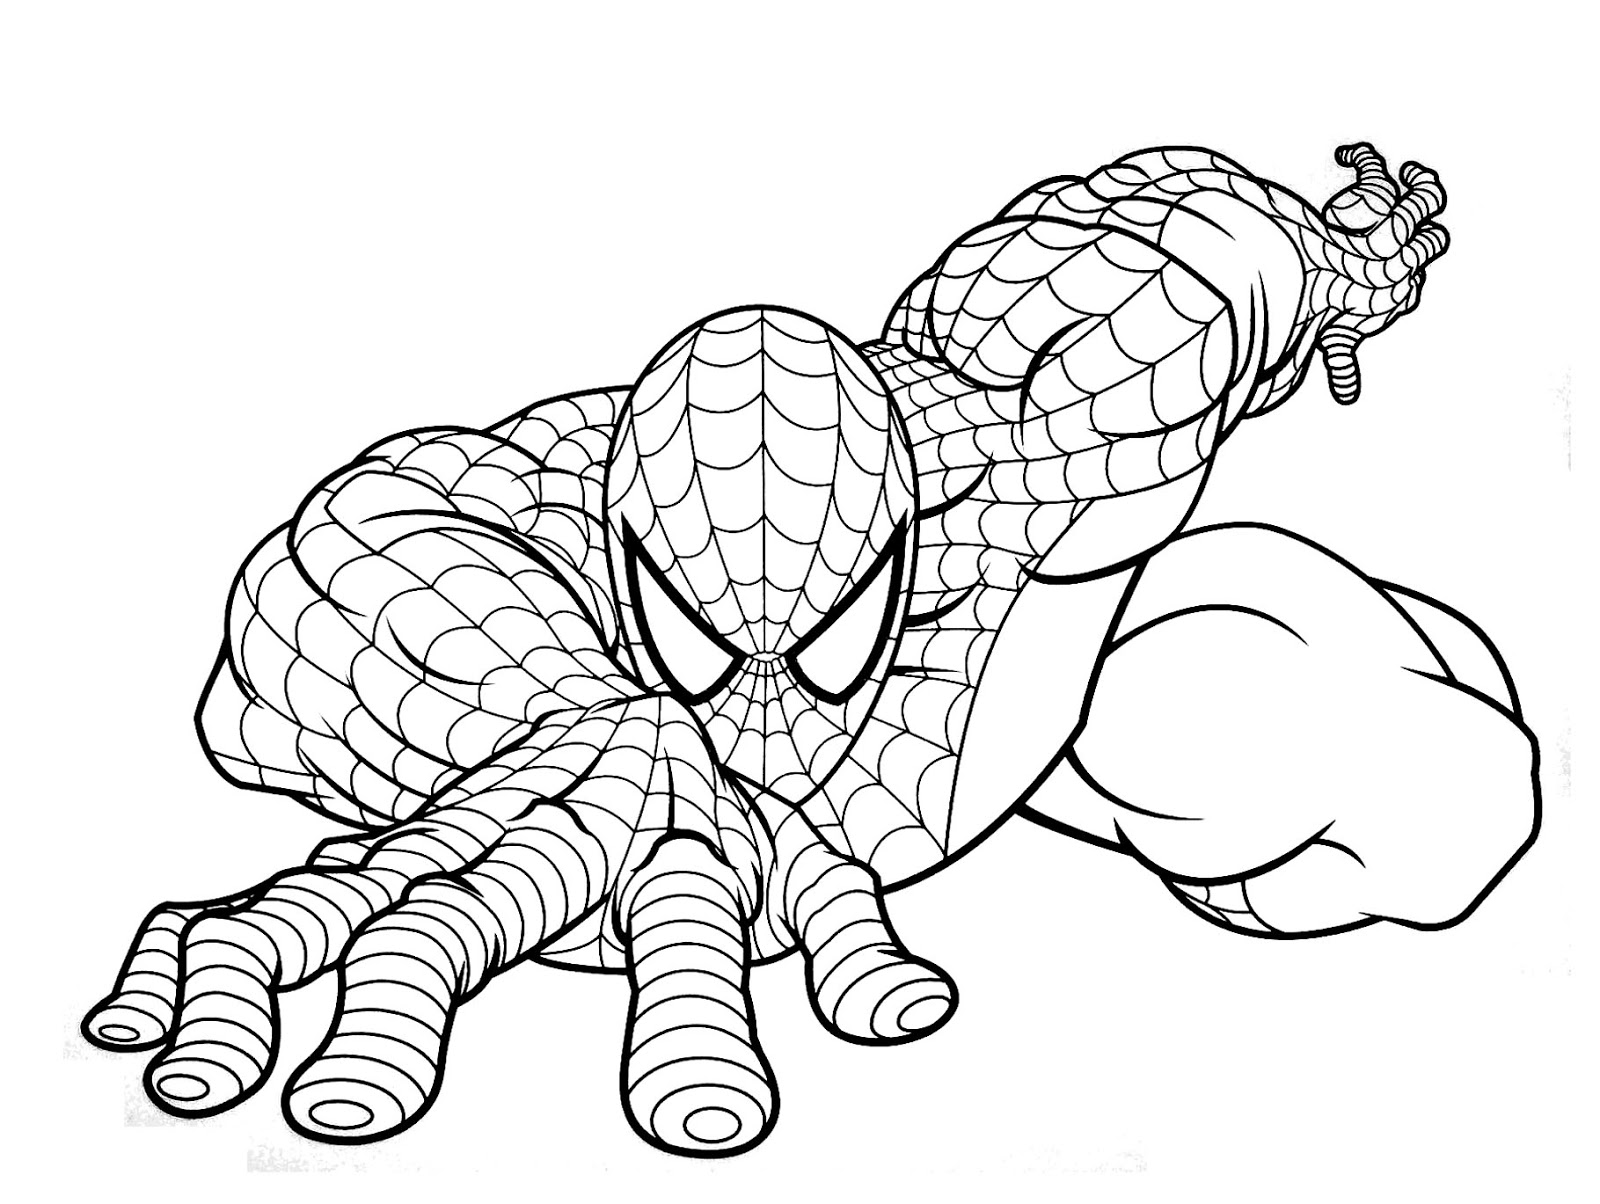 10 Mewarnai Gambar Spiderman